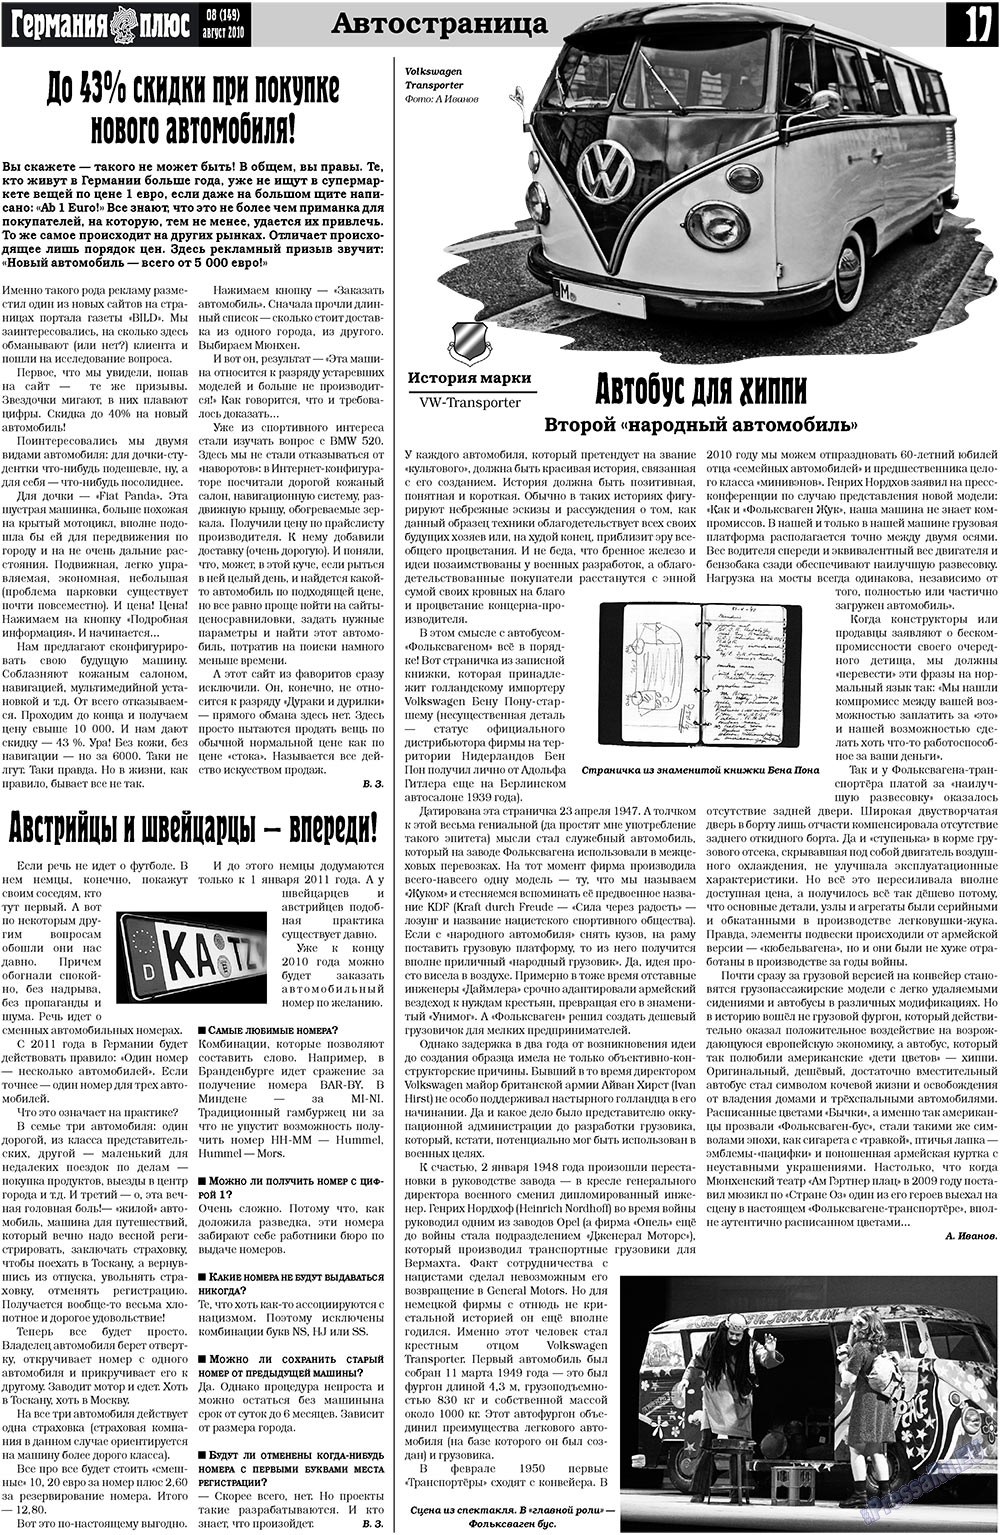 Германия плюс (газета). 2010 год, номер 8, стр. 17